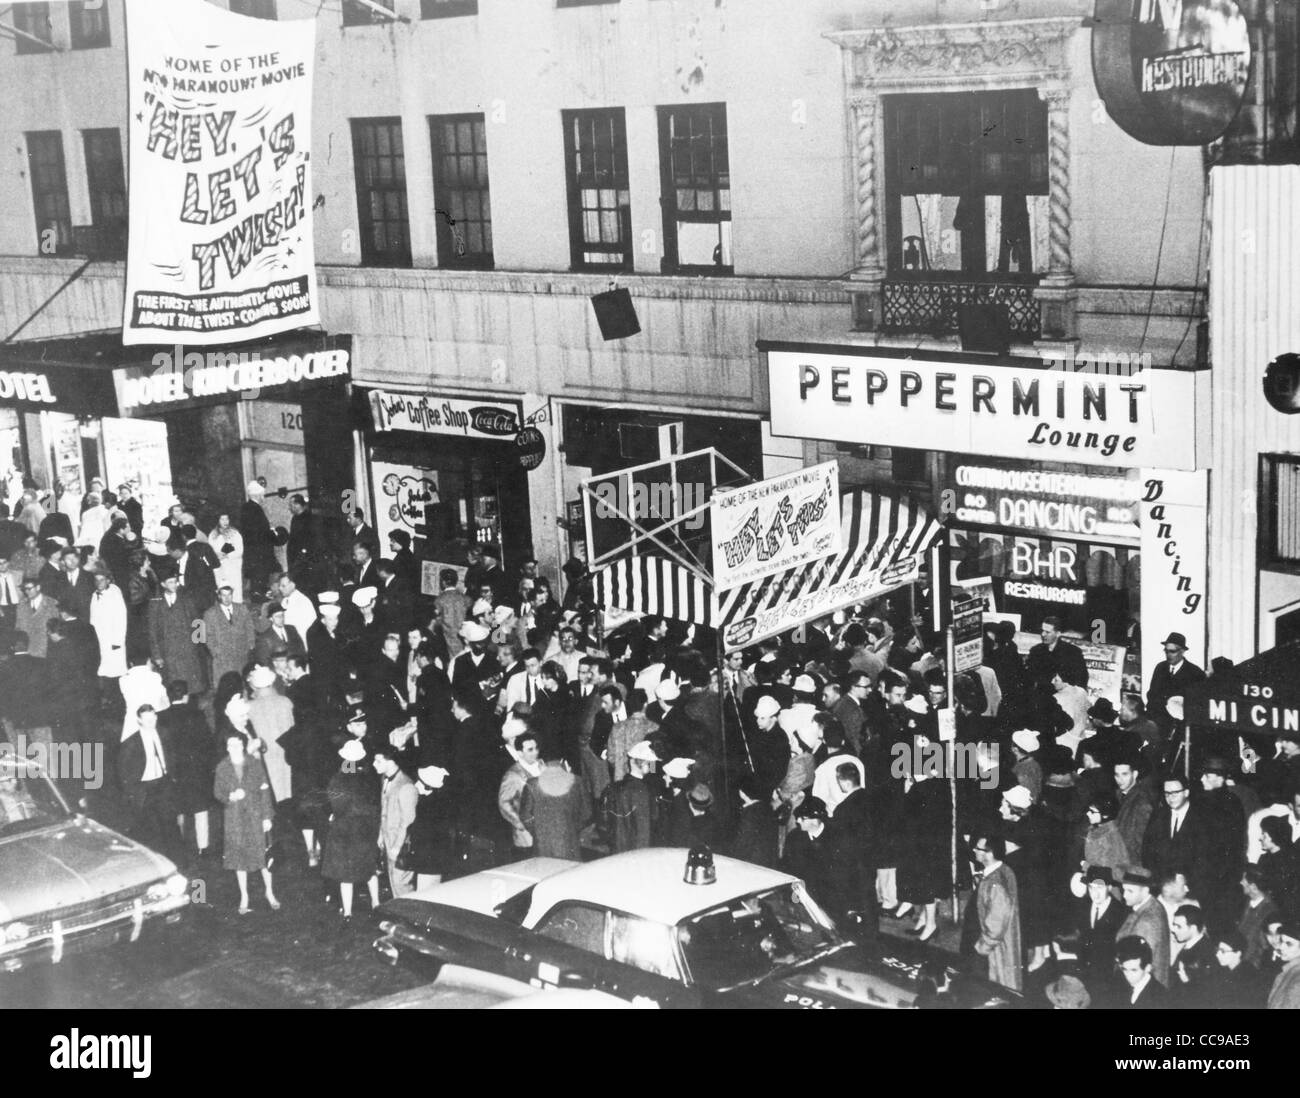 PEPPERMINT LOUNGE discothèque à 128 West 45th Street, New York, en 1961 Banque D'Images